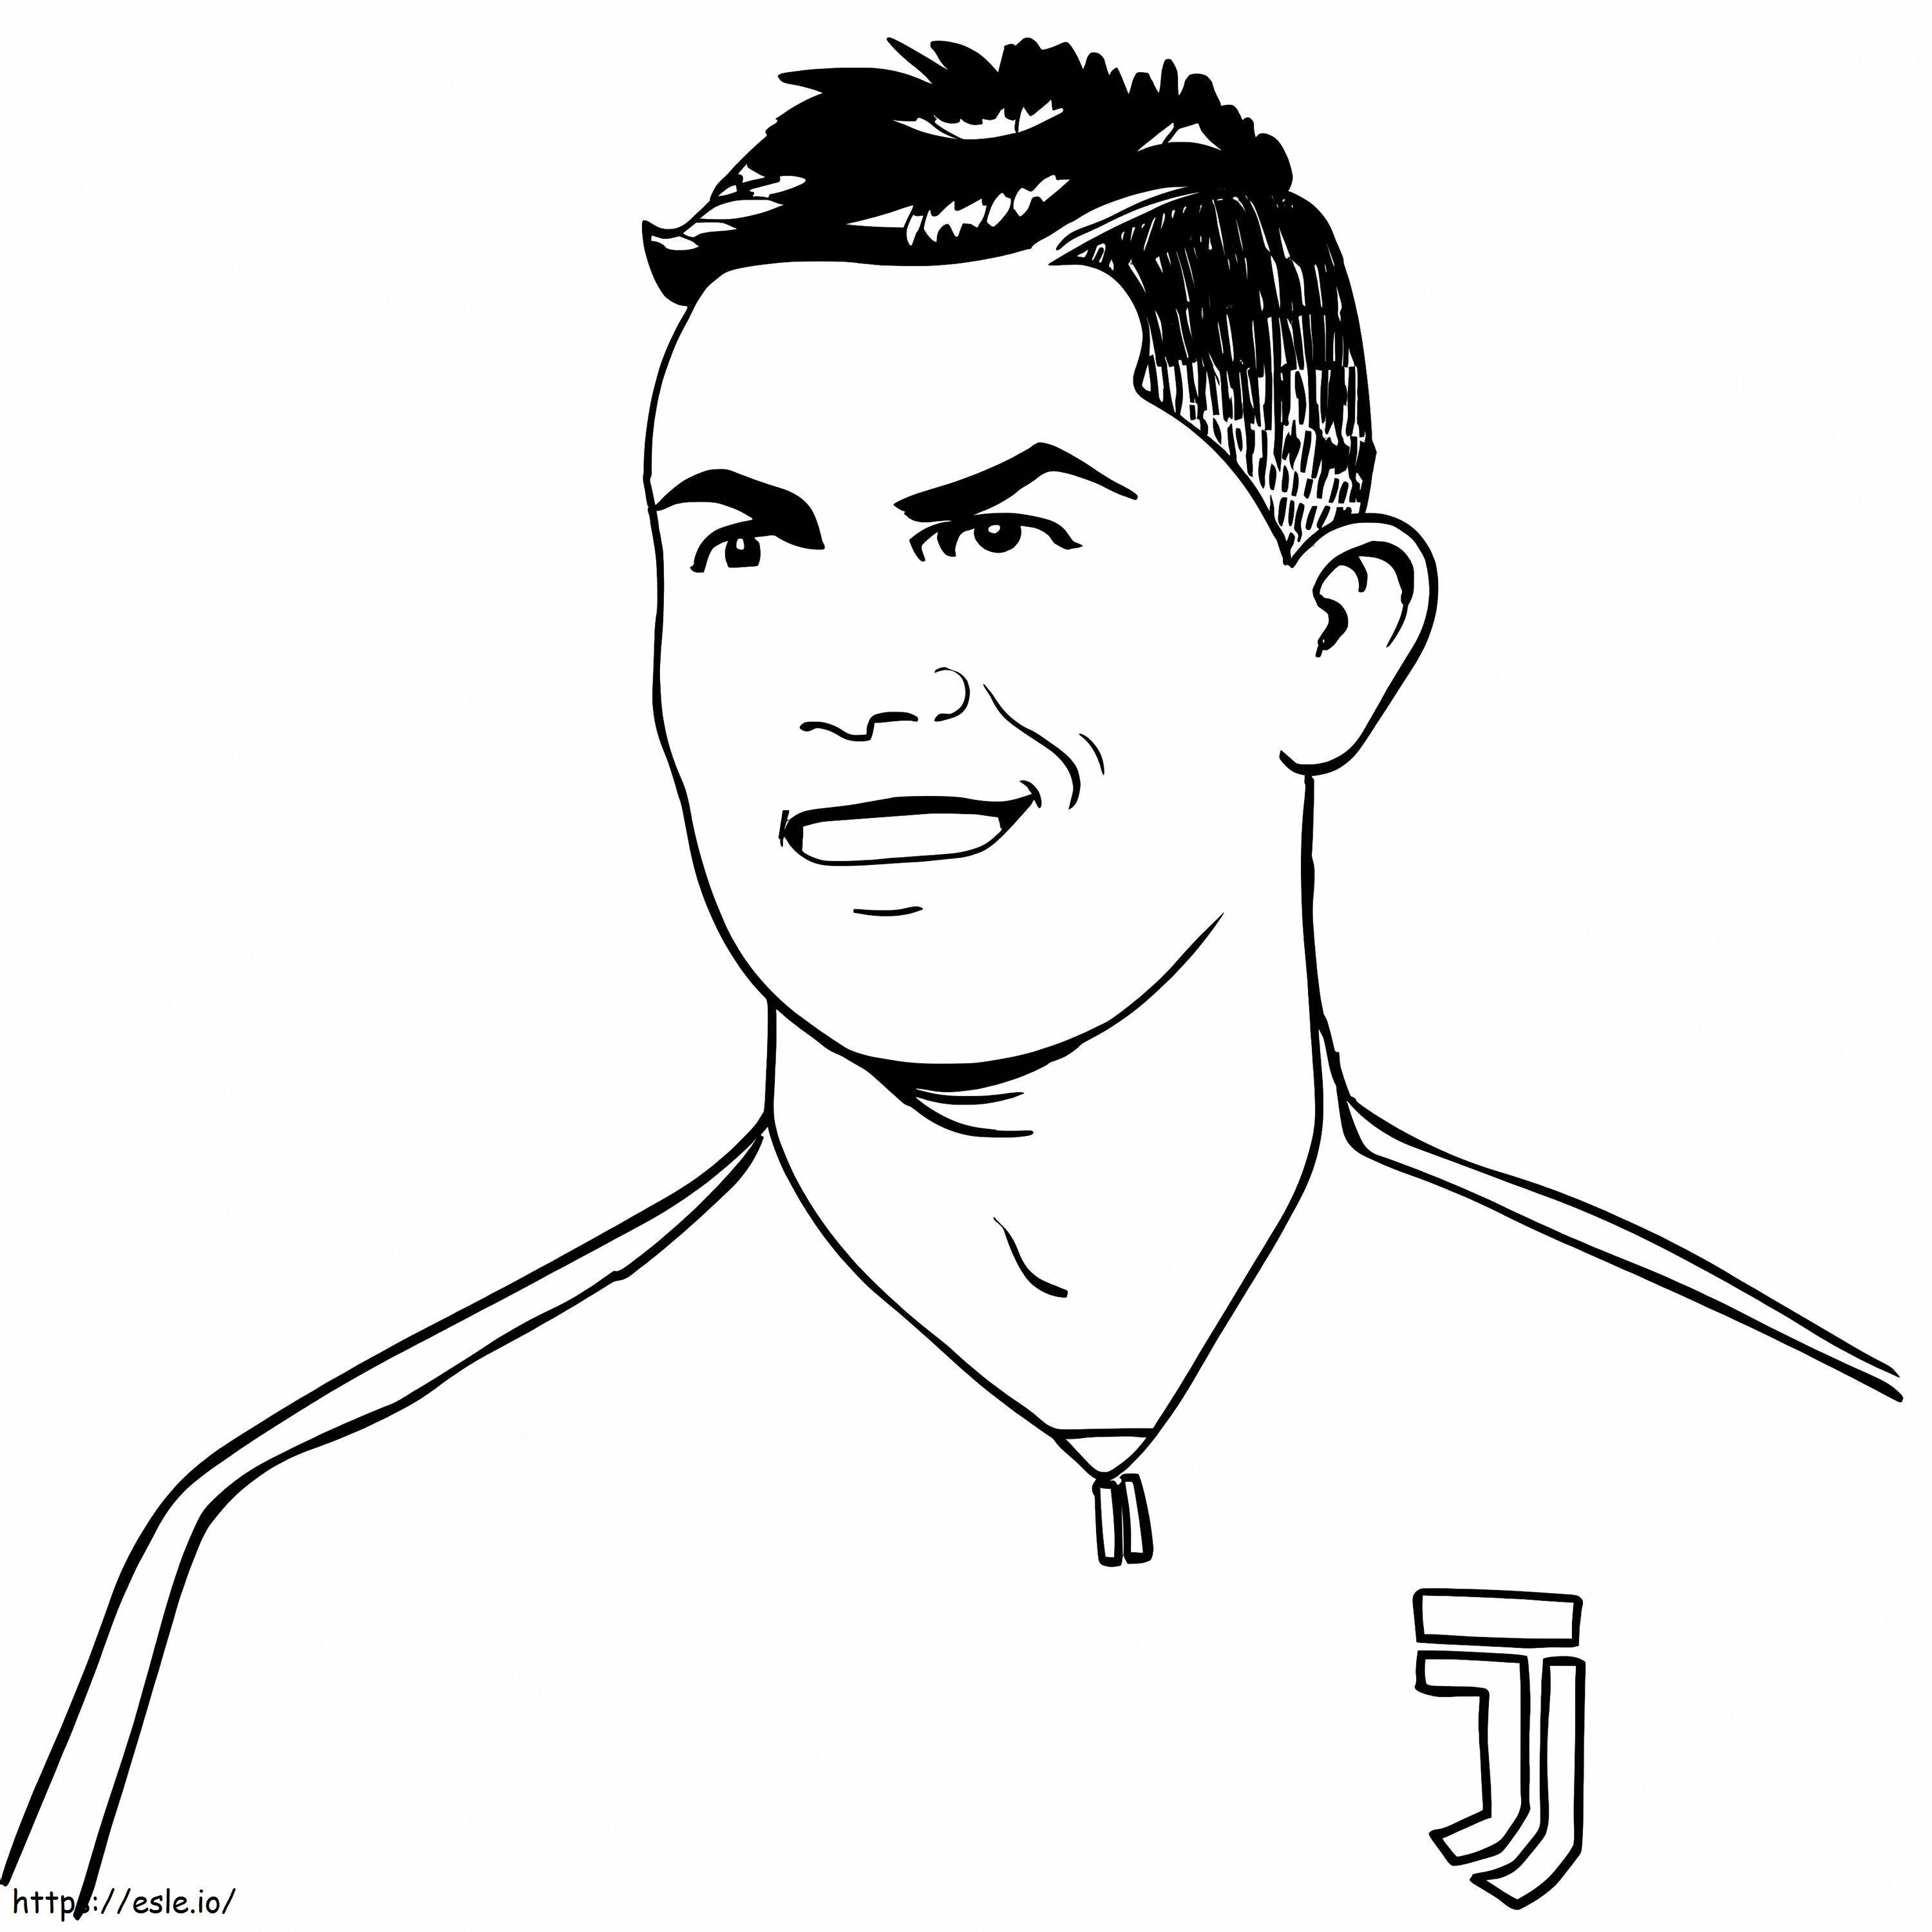 Cristiano Ronaldo'nun Gülen Yüzü boyama